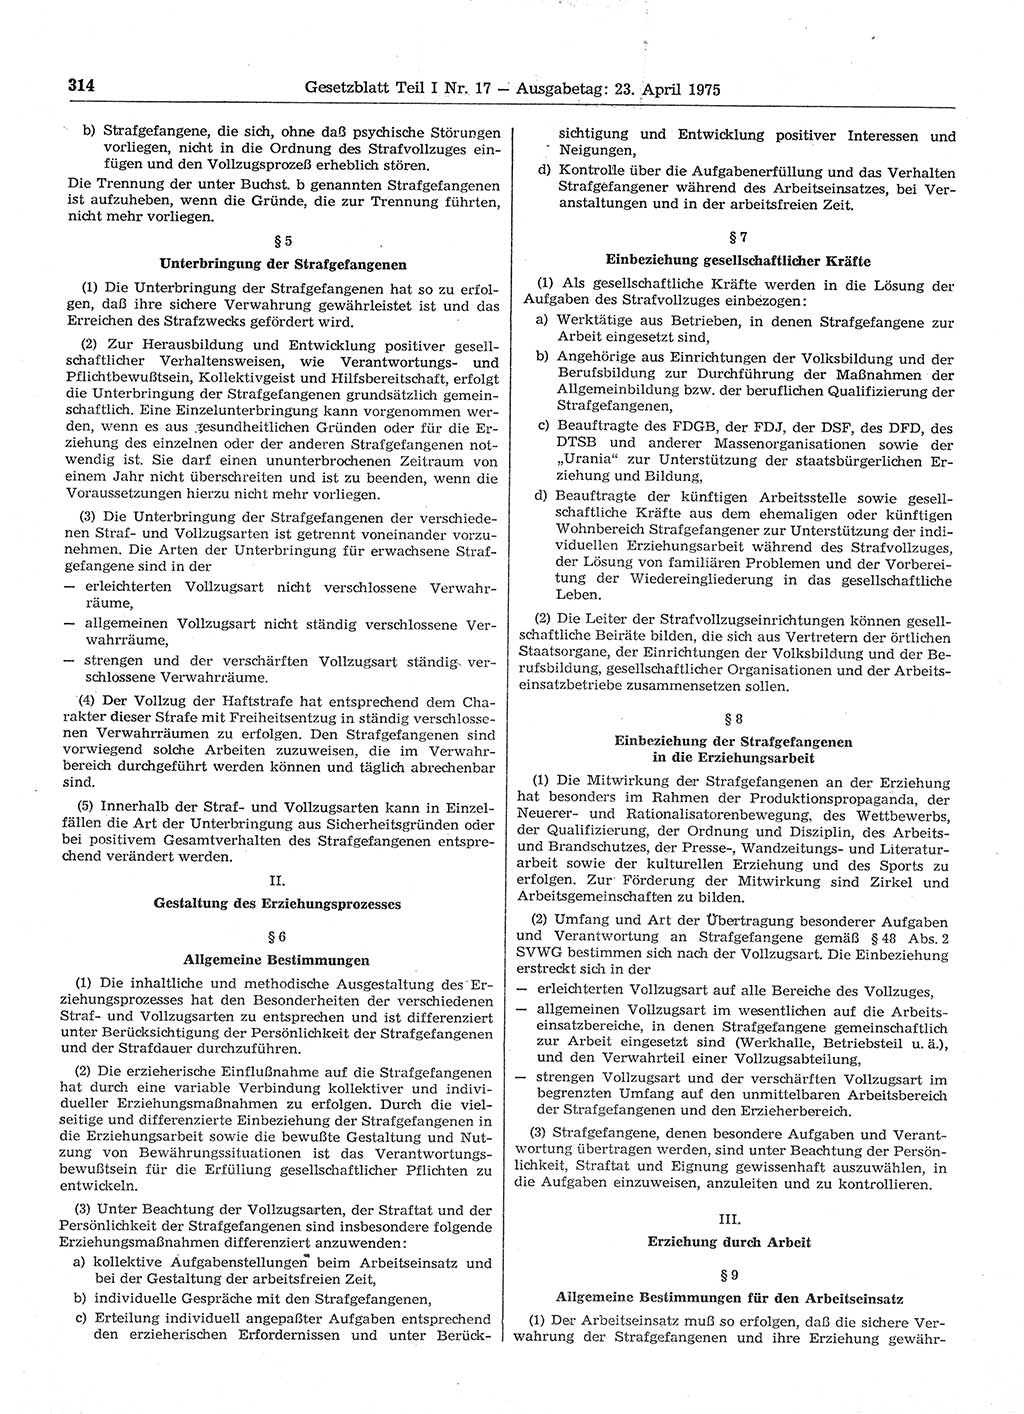 Gesetzblatt (GBl.) der Deutschen Demokratischen Republik (DDR) Teil Ⅰ 1975, Seite 314 (GBl. DDR Ⅰ 1975, S. 314)